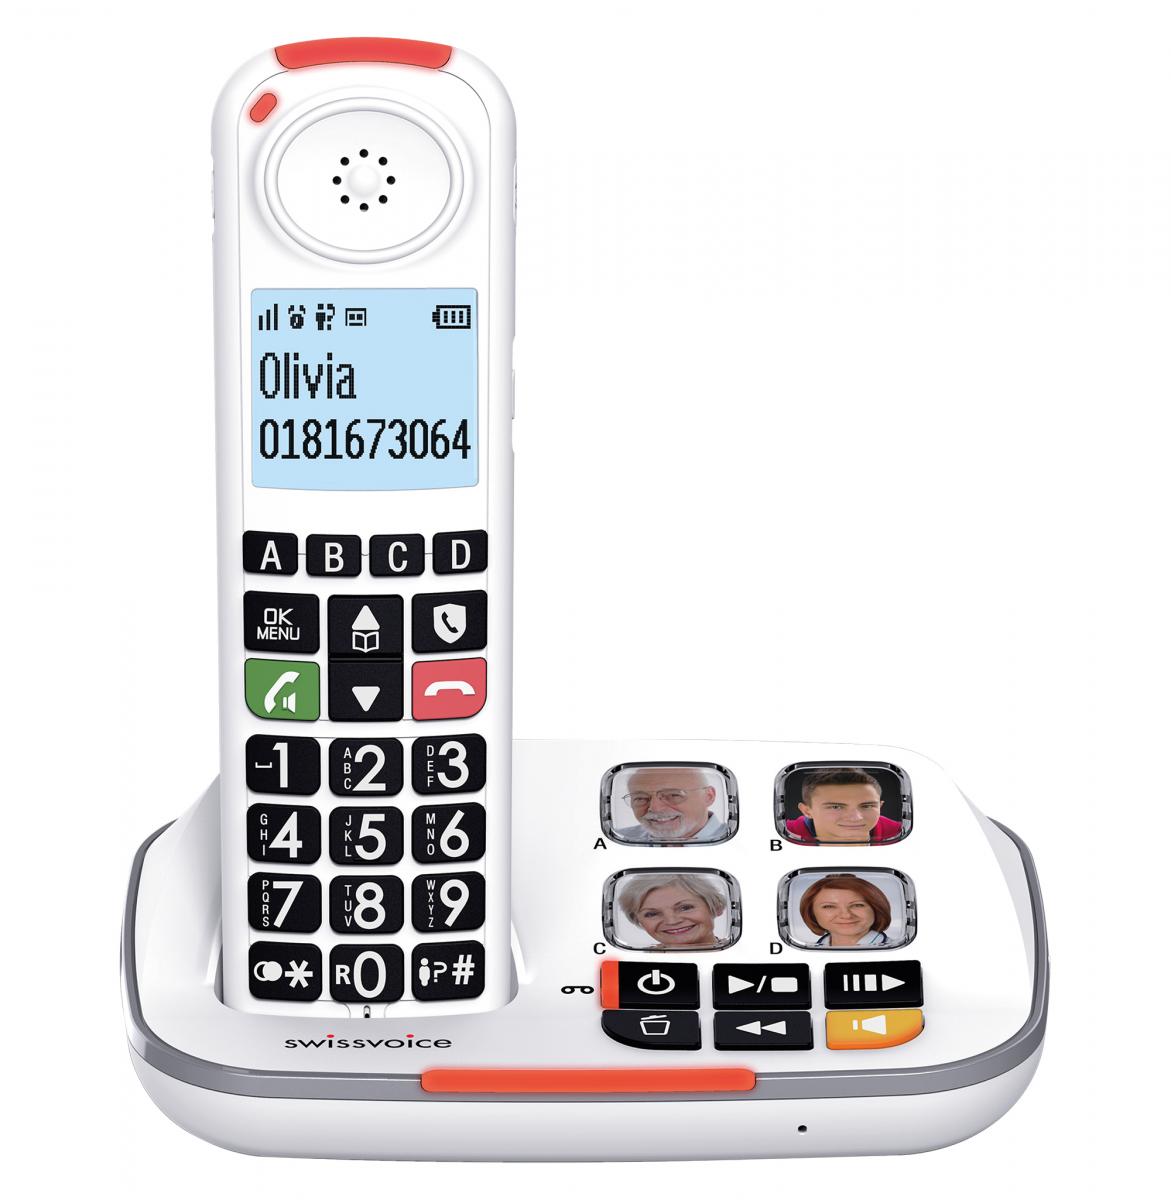 Imagen del conjunto Swissvoice Xtra 2355, el teléfono inalámbrico apoyado en la estación base